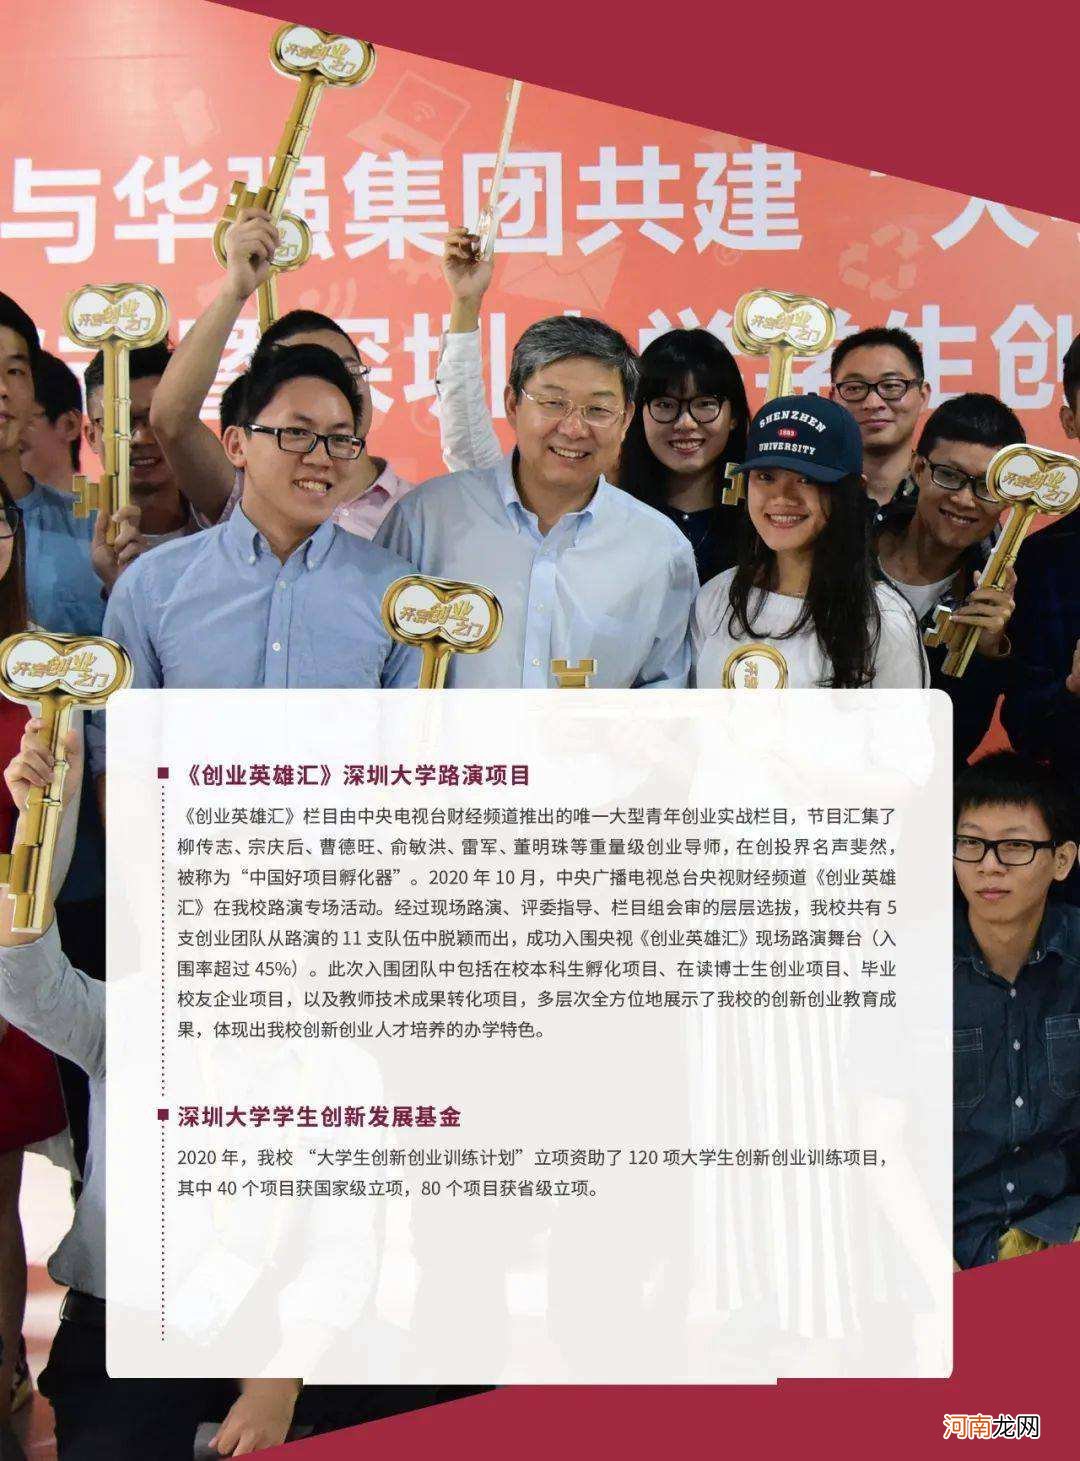 深大的创业扶持政策 深圳大学生创业补贴条件